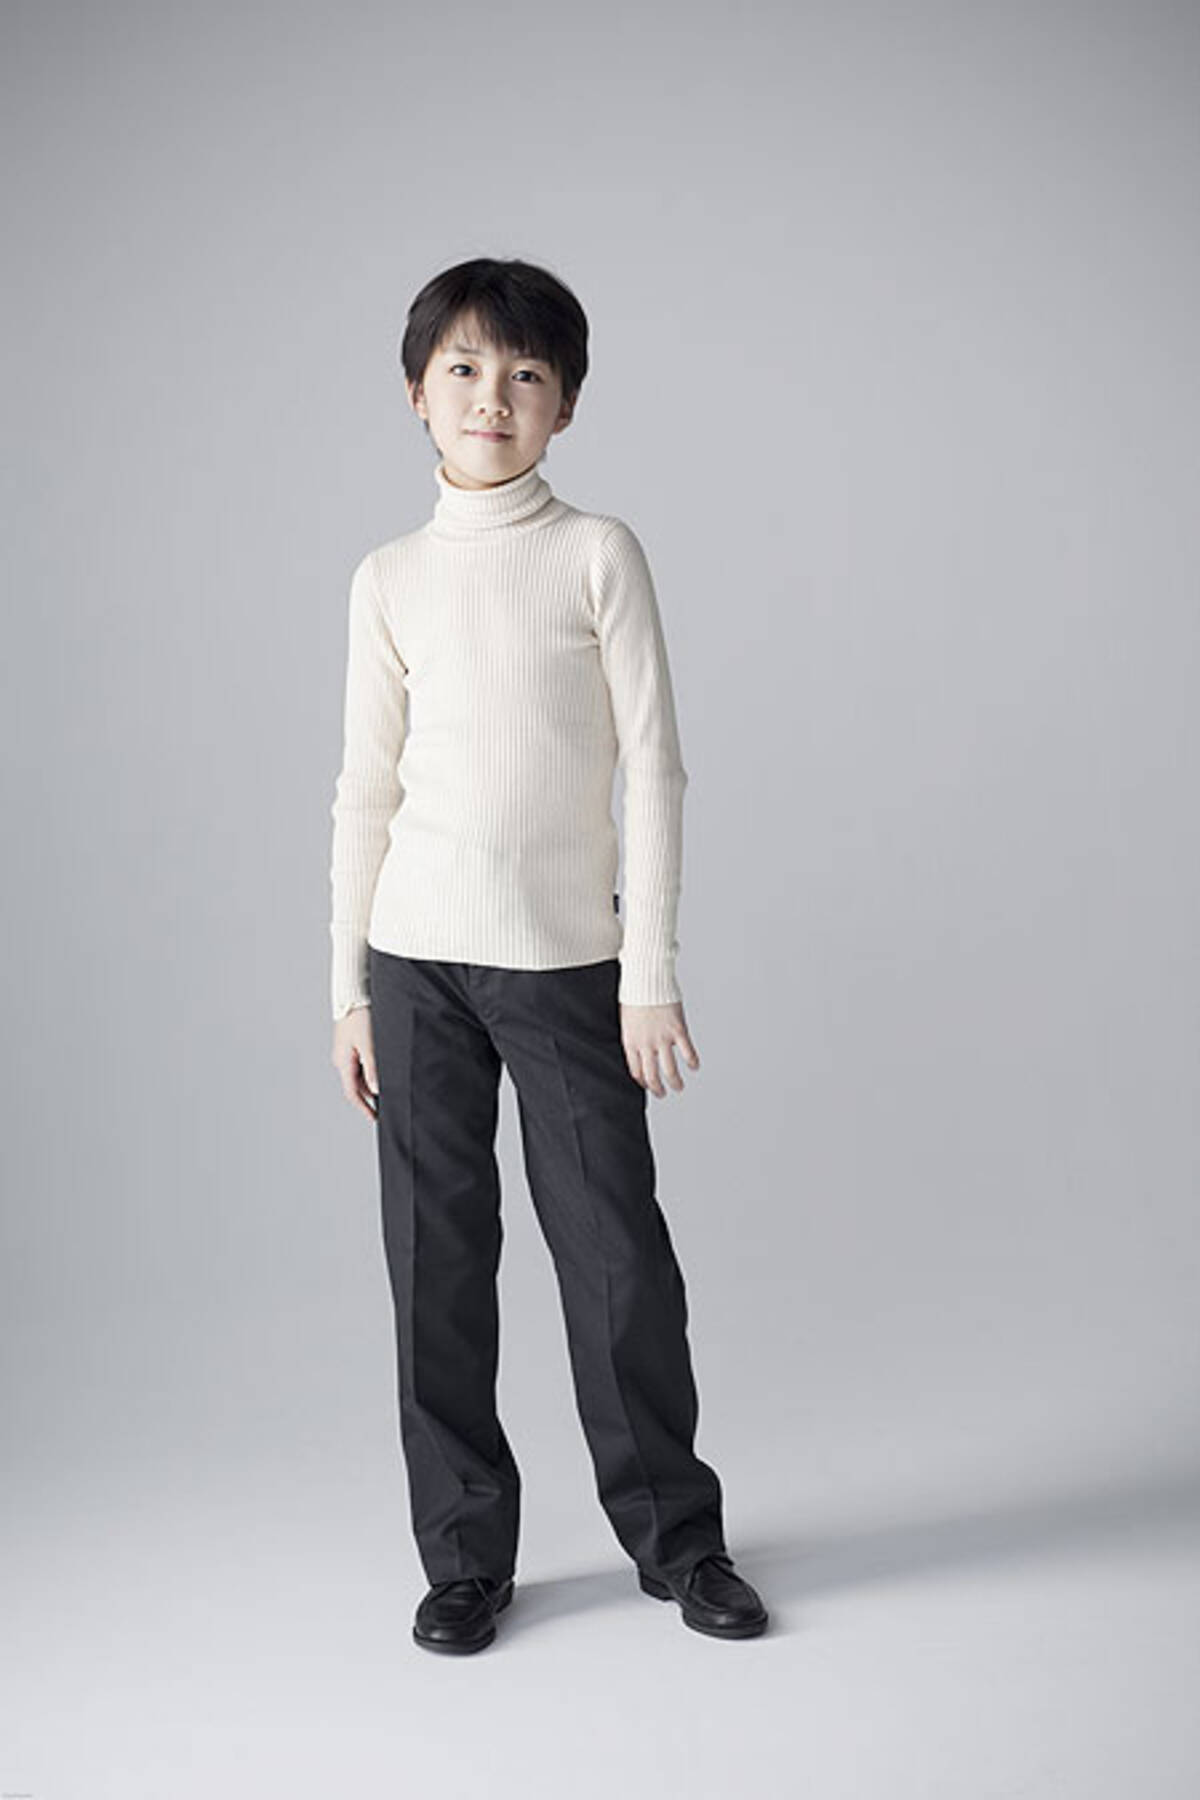 12歳の天才少年ピアニスト牛田智大 デビュー リサイタルが決定 12年3月26日 エキサイトニュース